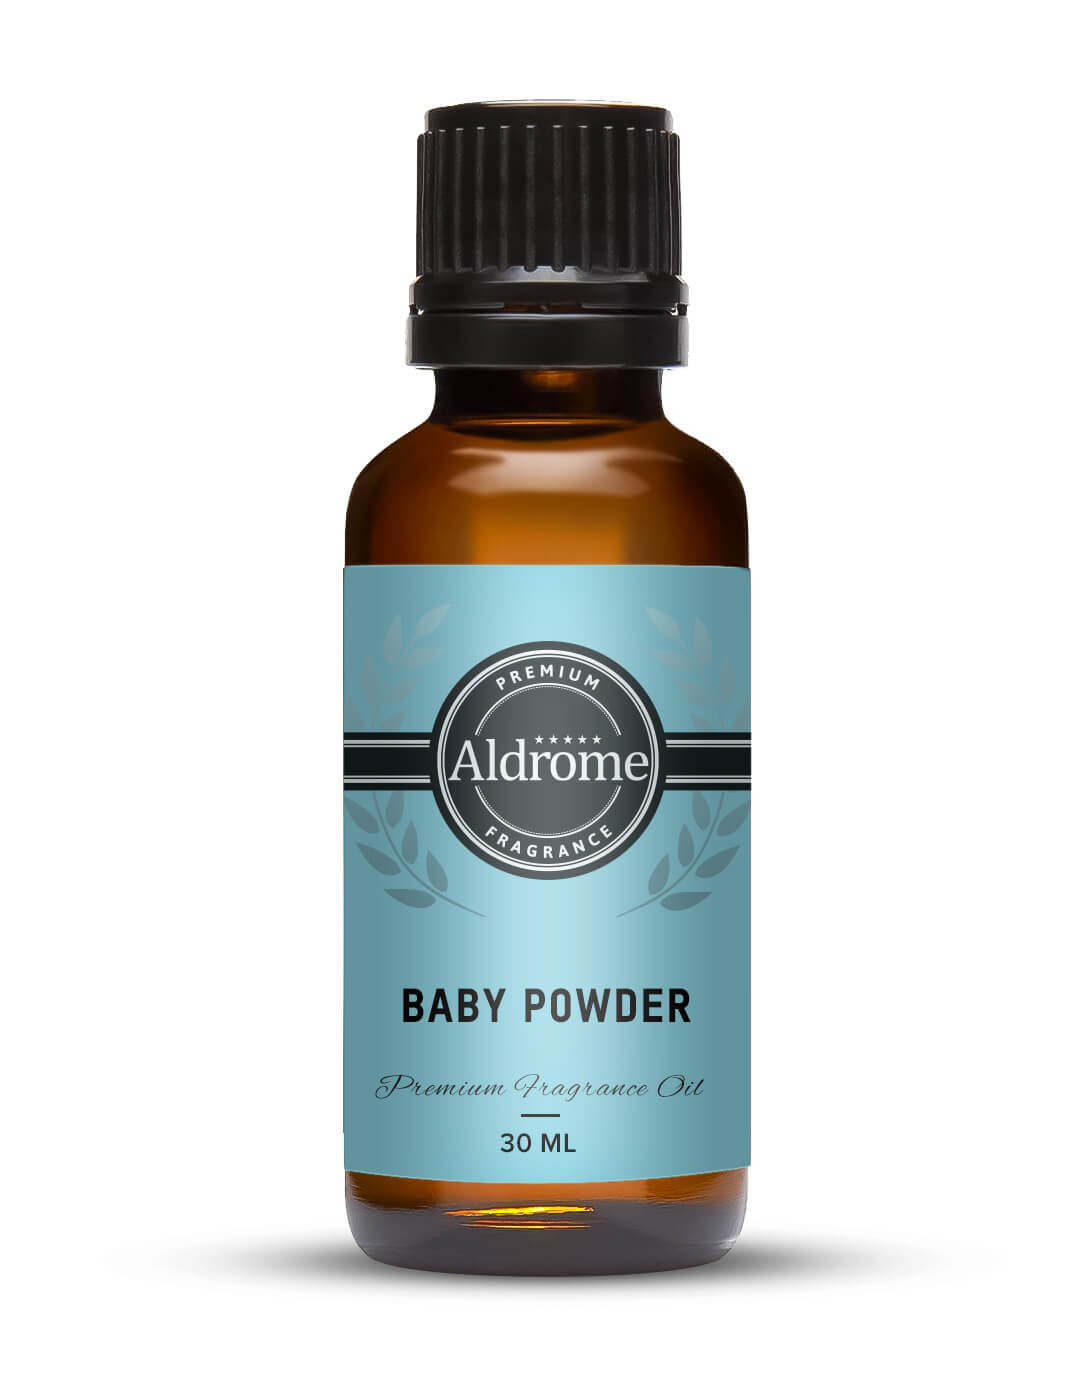 Baby Powder Fragrance Oil - 30ml at Best price | Aldrome Premium Fragrance Oil